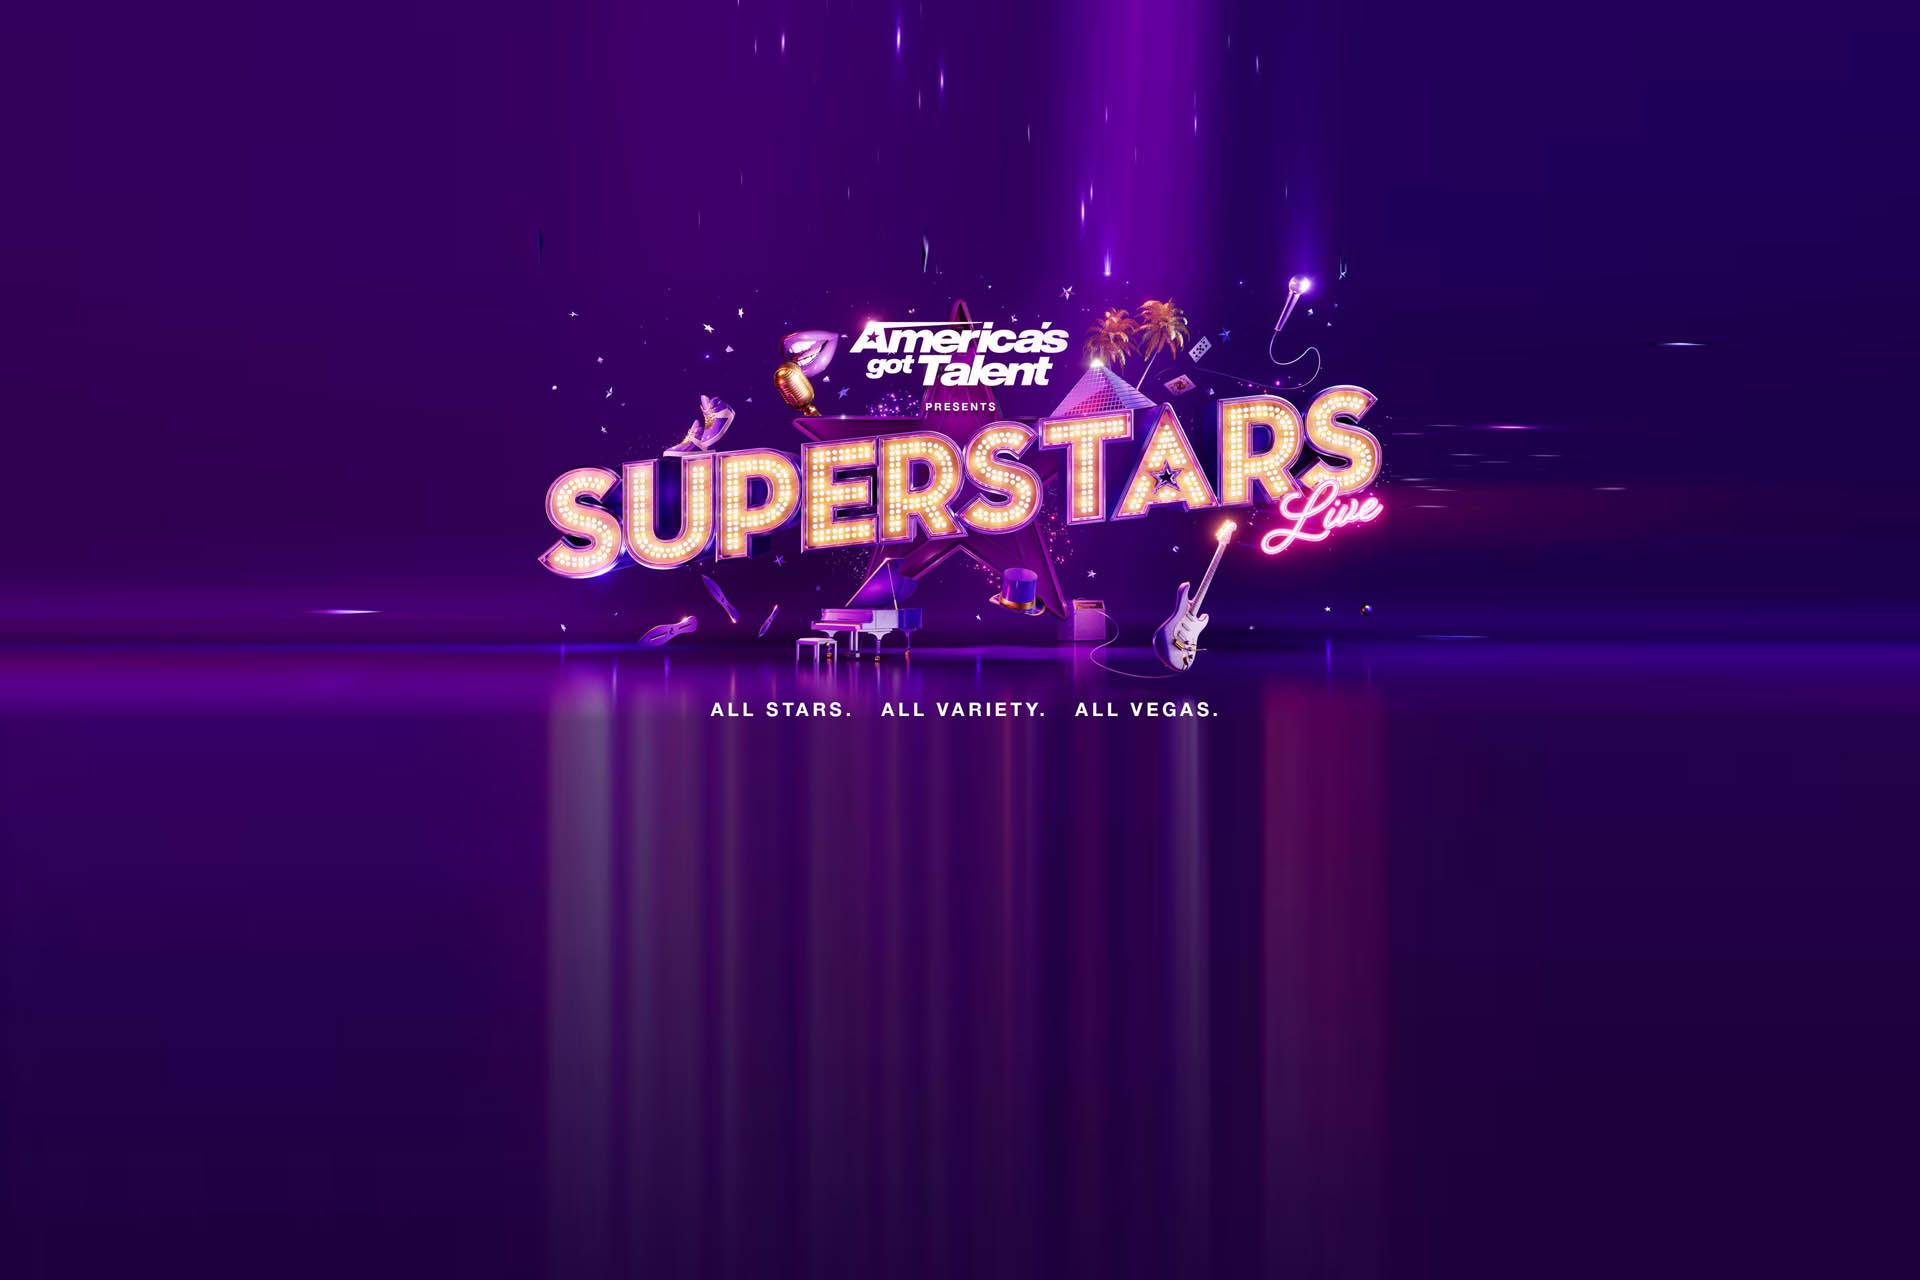 BG_Americas_Got_Talent_Presents_Super_Stars_Live_Show